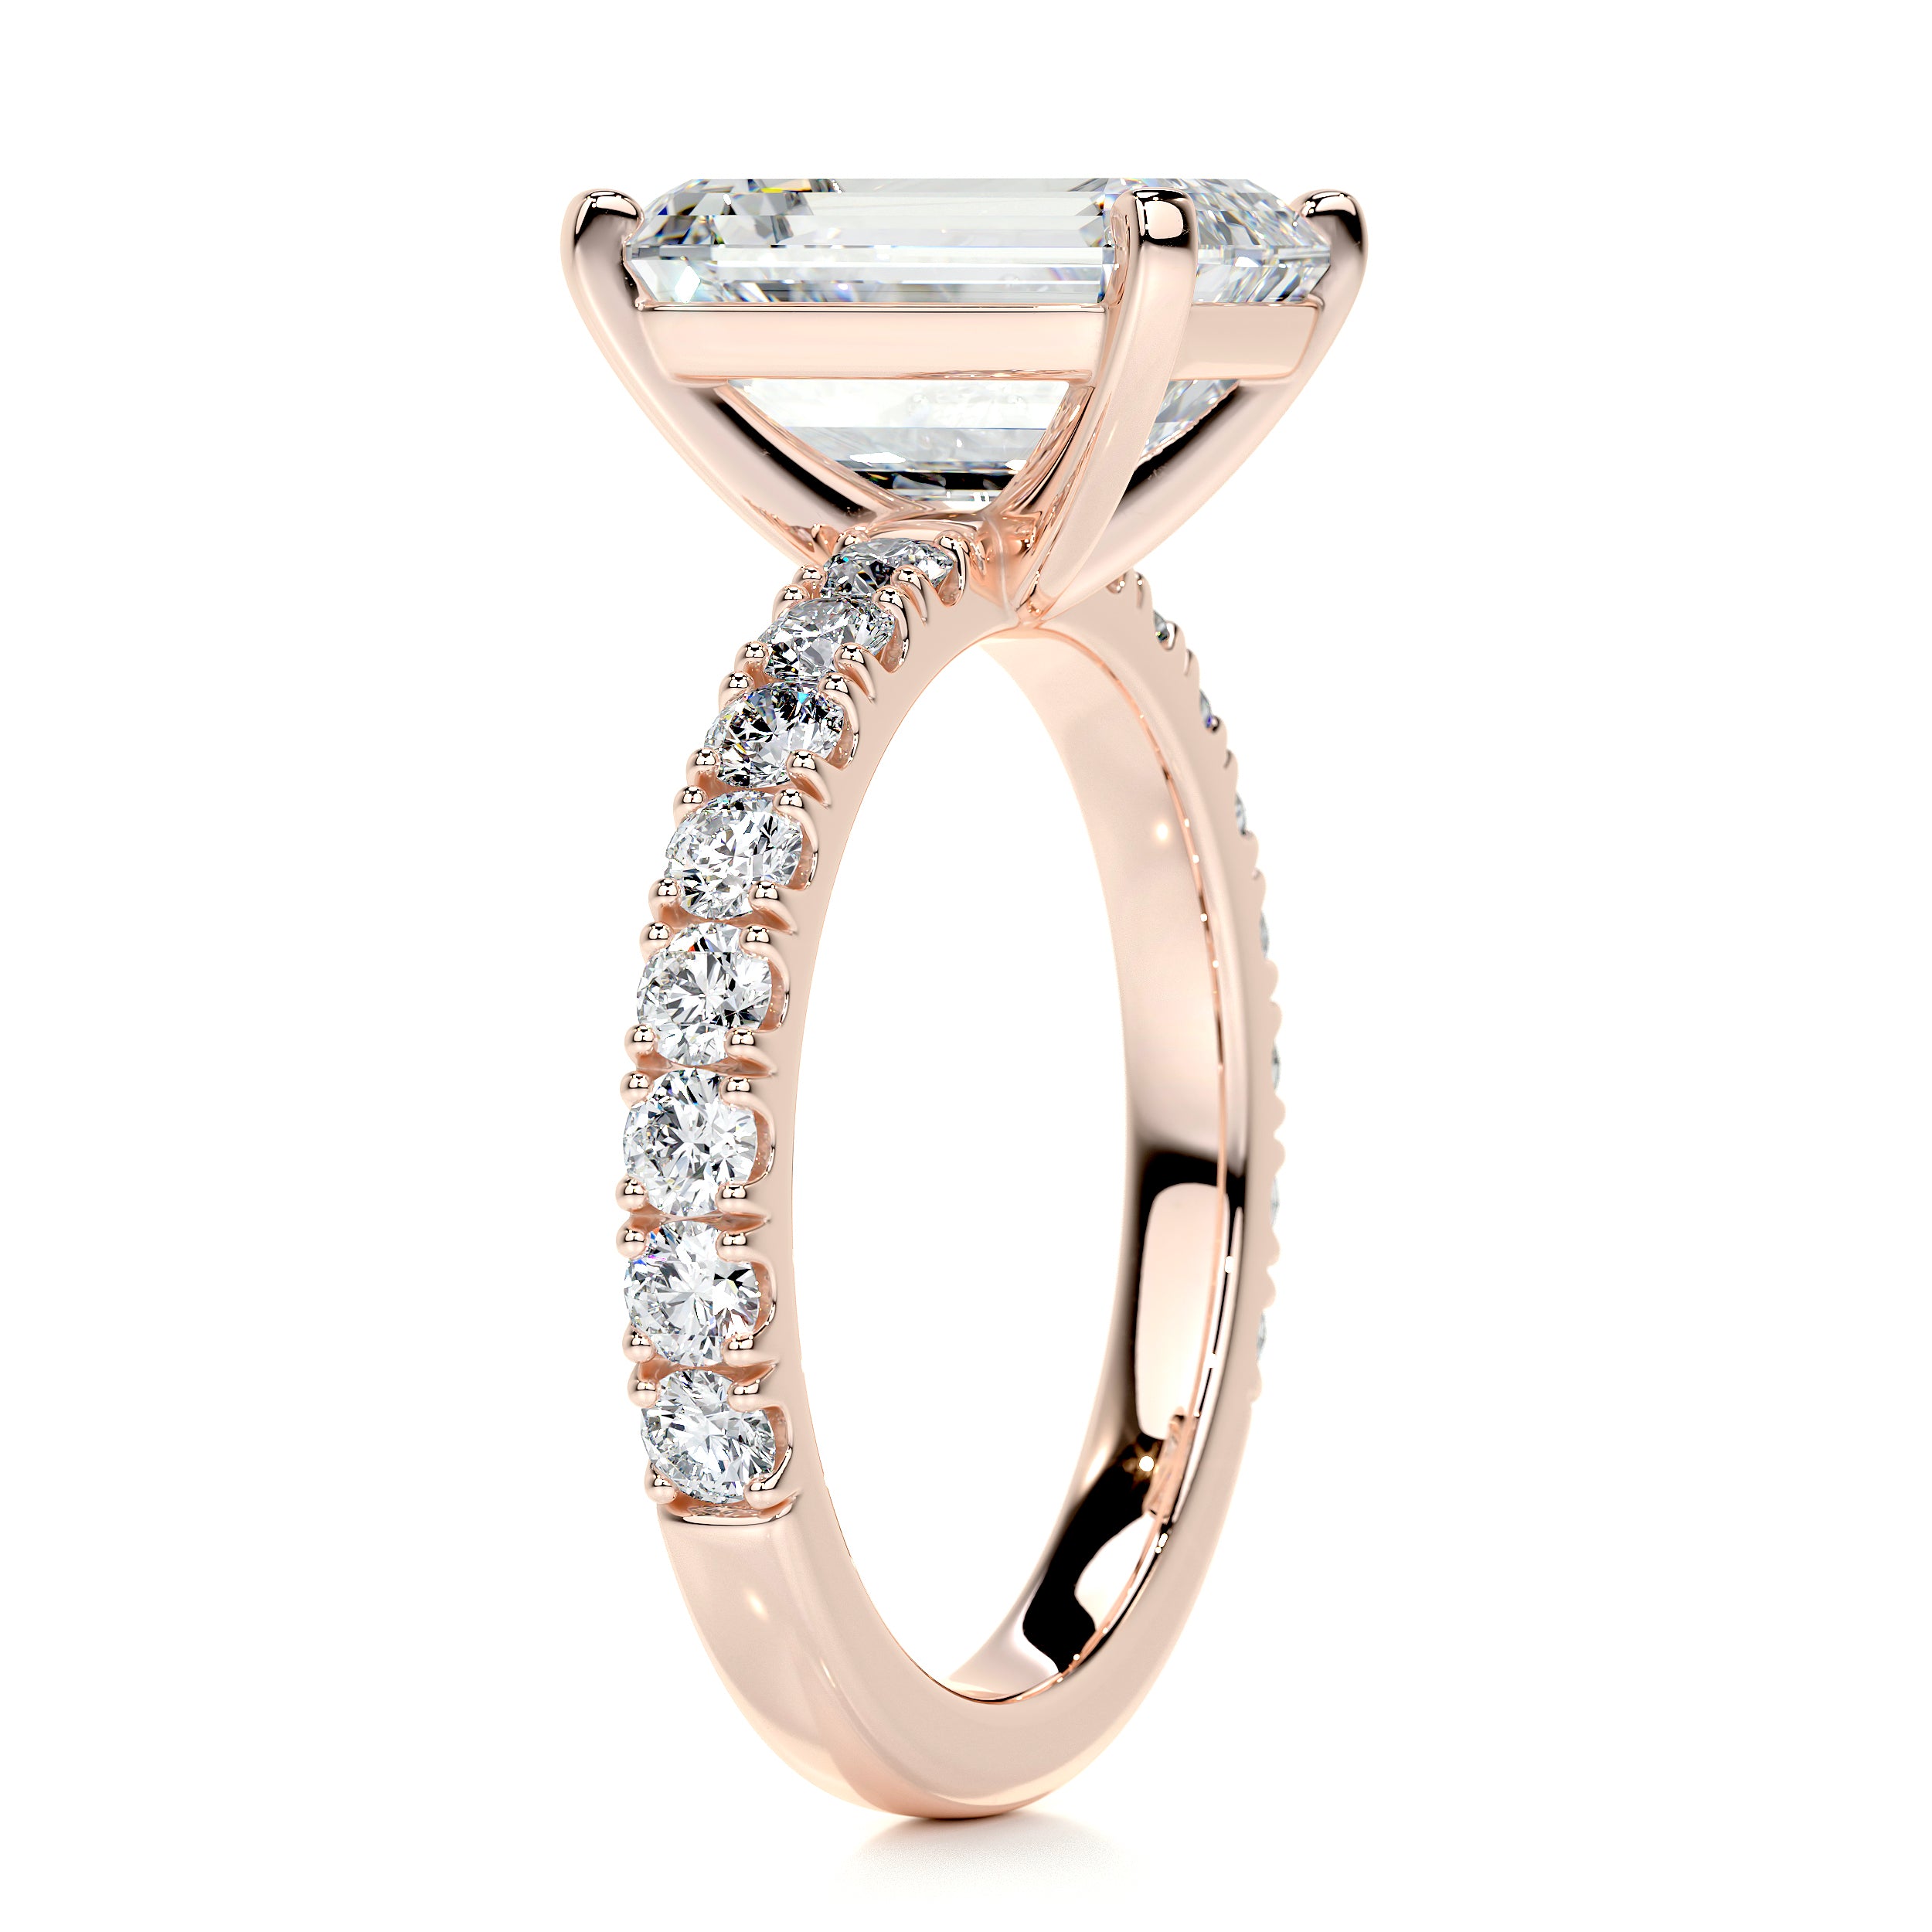 Royal Diamond Engagement Ring   (3.5 Carat) -14K Rose Gold